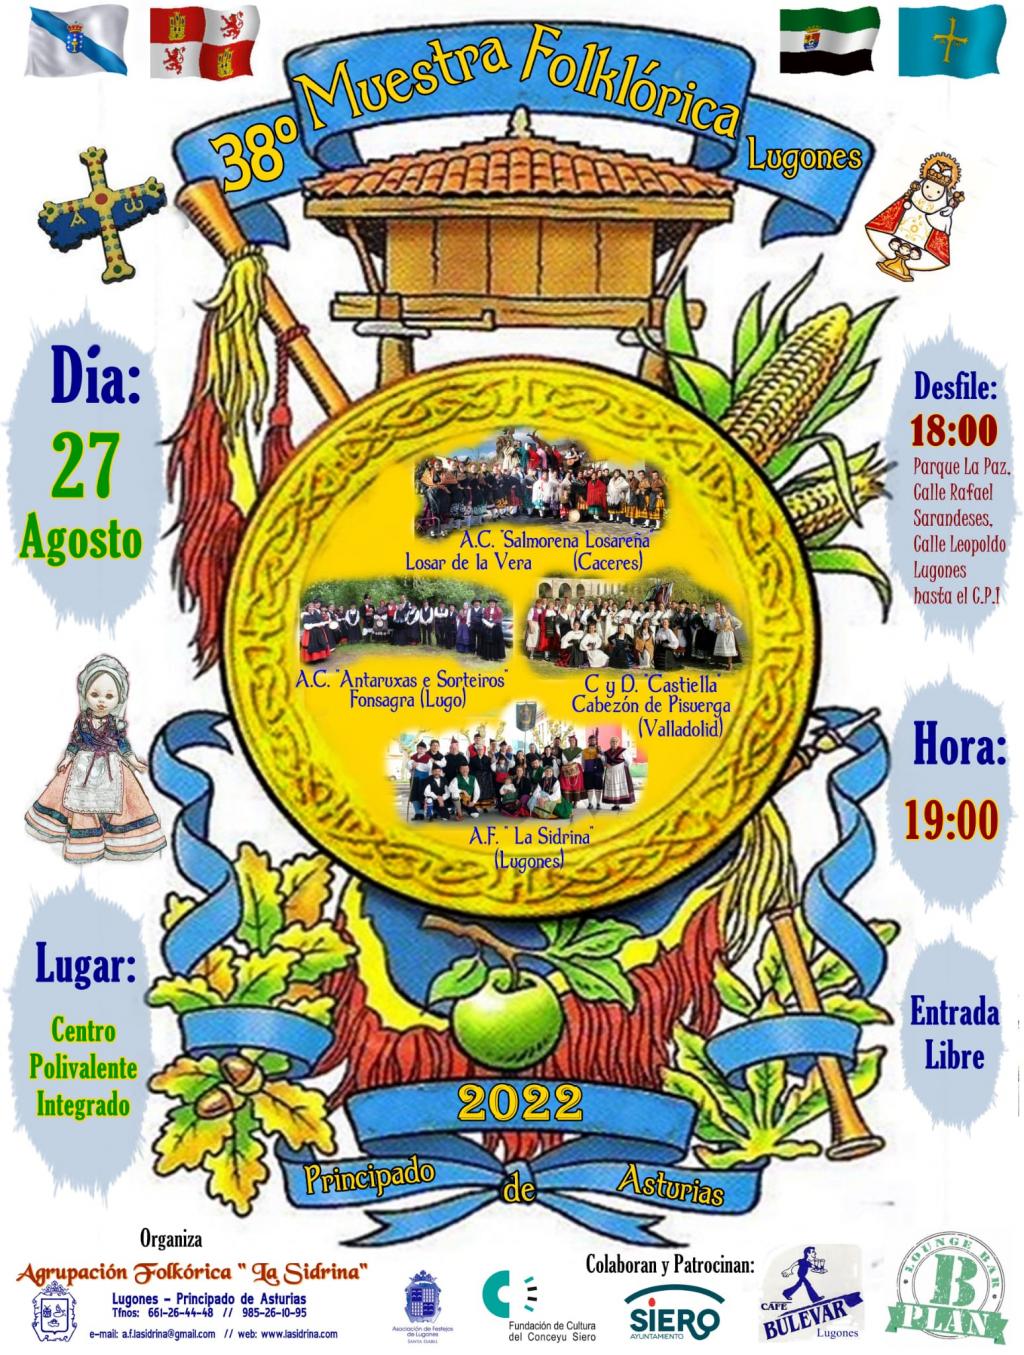 El Tapin - La Sidrina organiza la XXXVIII Muestra Folklórica de Lugones 2022 el 27 de agosto